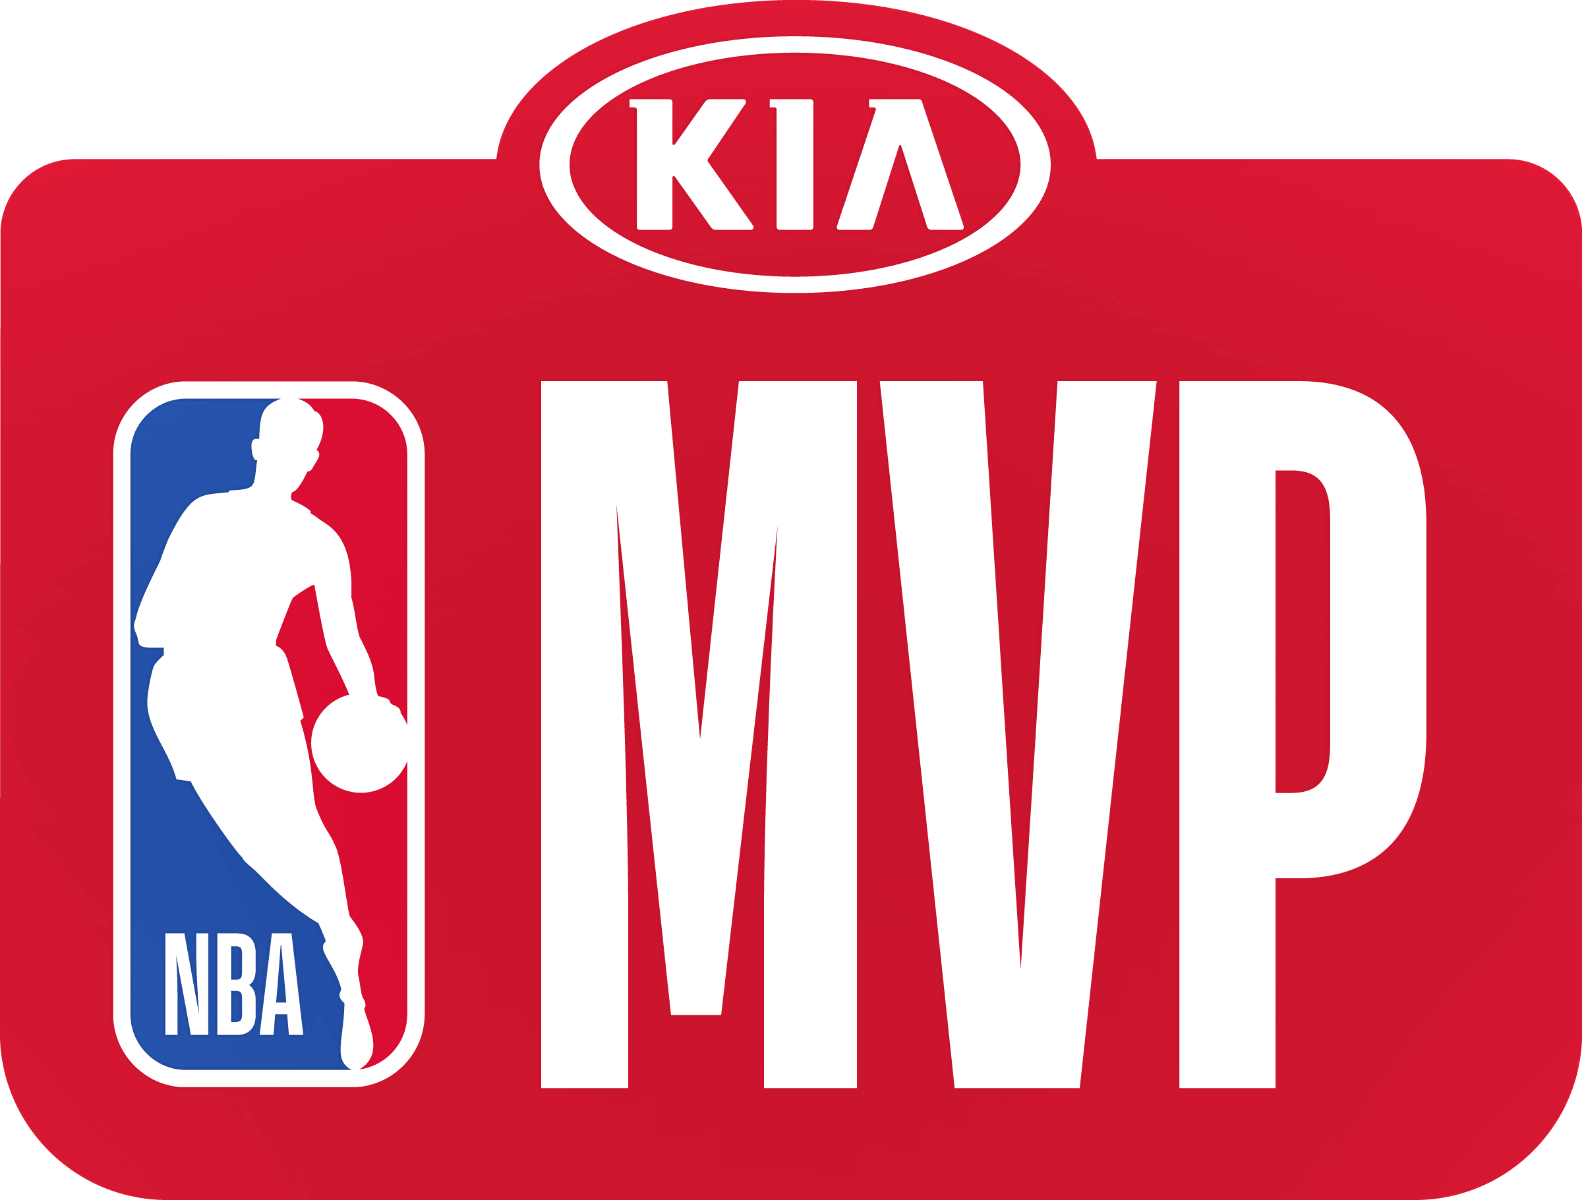 Milwaukee’s Giannis Antetokounmpo wins 2019-20 Kia NBA Most Valuable Player Award